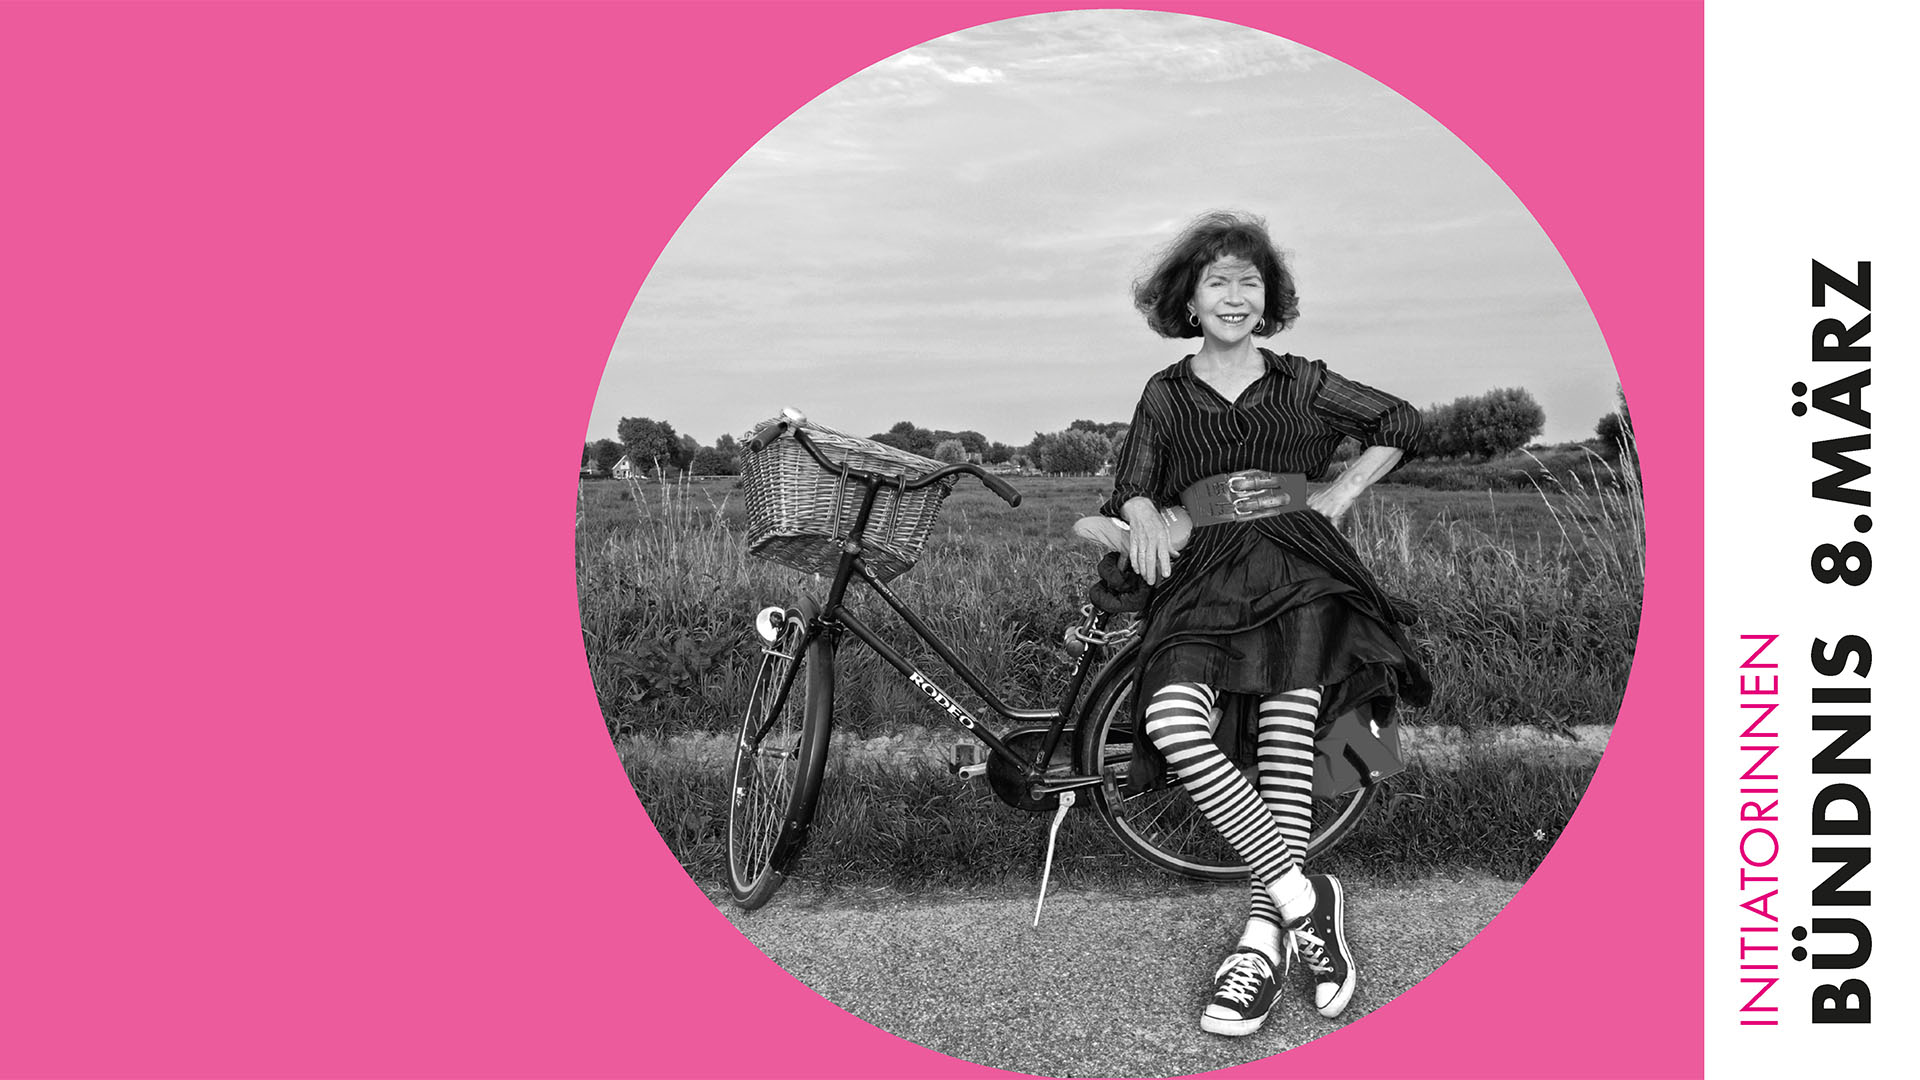 In einem runden Bildauschnitt lehnt sich eine Frau an einem Feldrand an ein abgestelltes Fahrrad. Außerhalb des Auschnittes befindet sich ein rosafarbener Rahmen mit der Beschriftung "Innitiatorinnen Bündnis 8. März"